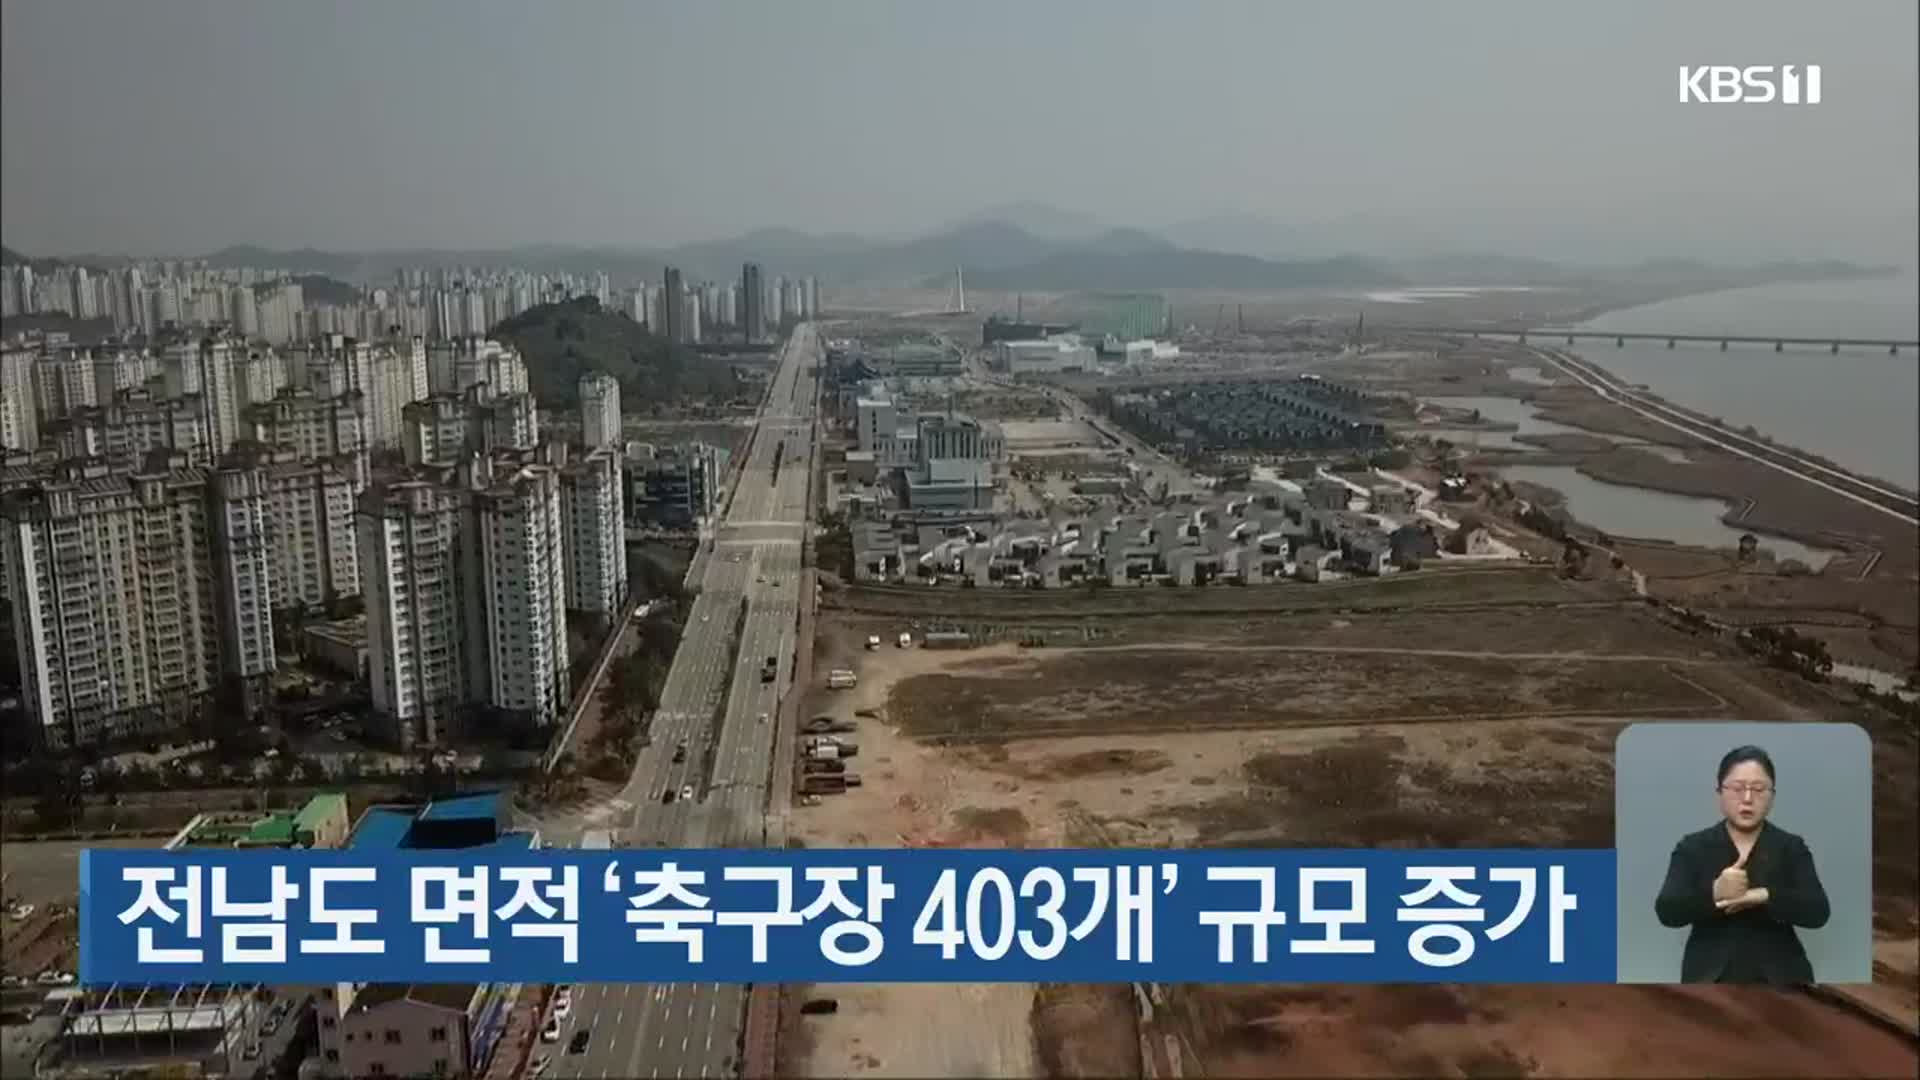 전남도 면적 ‘축구장 403개’ 규모 증가